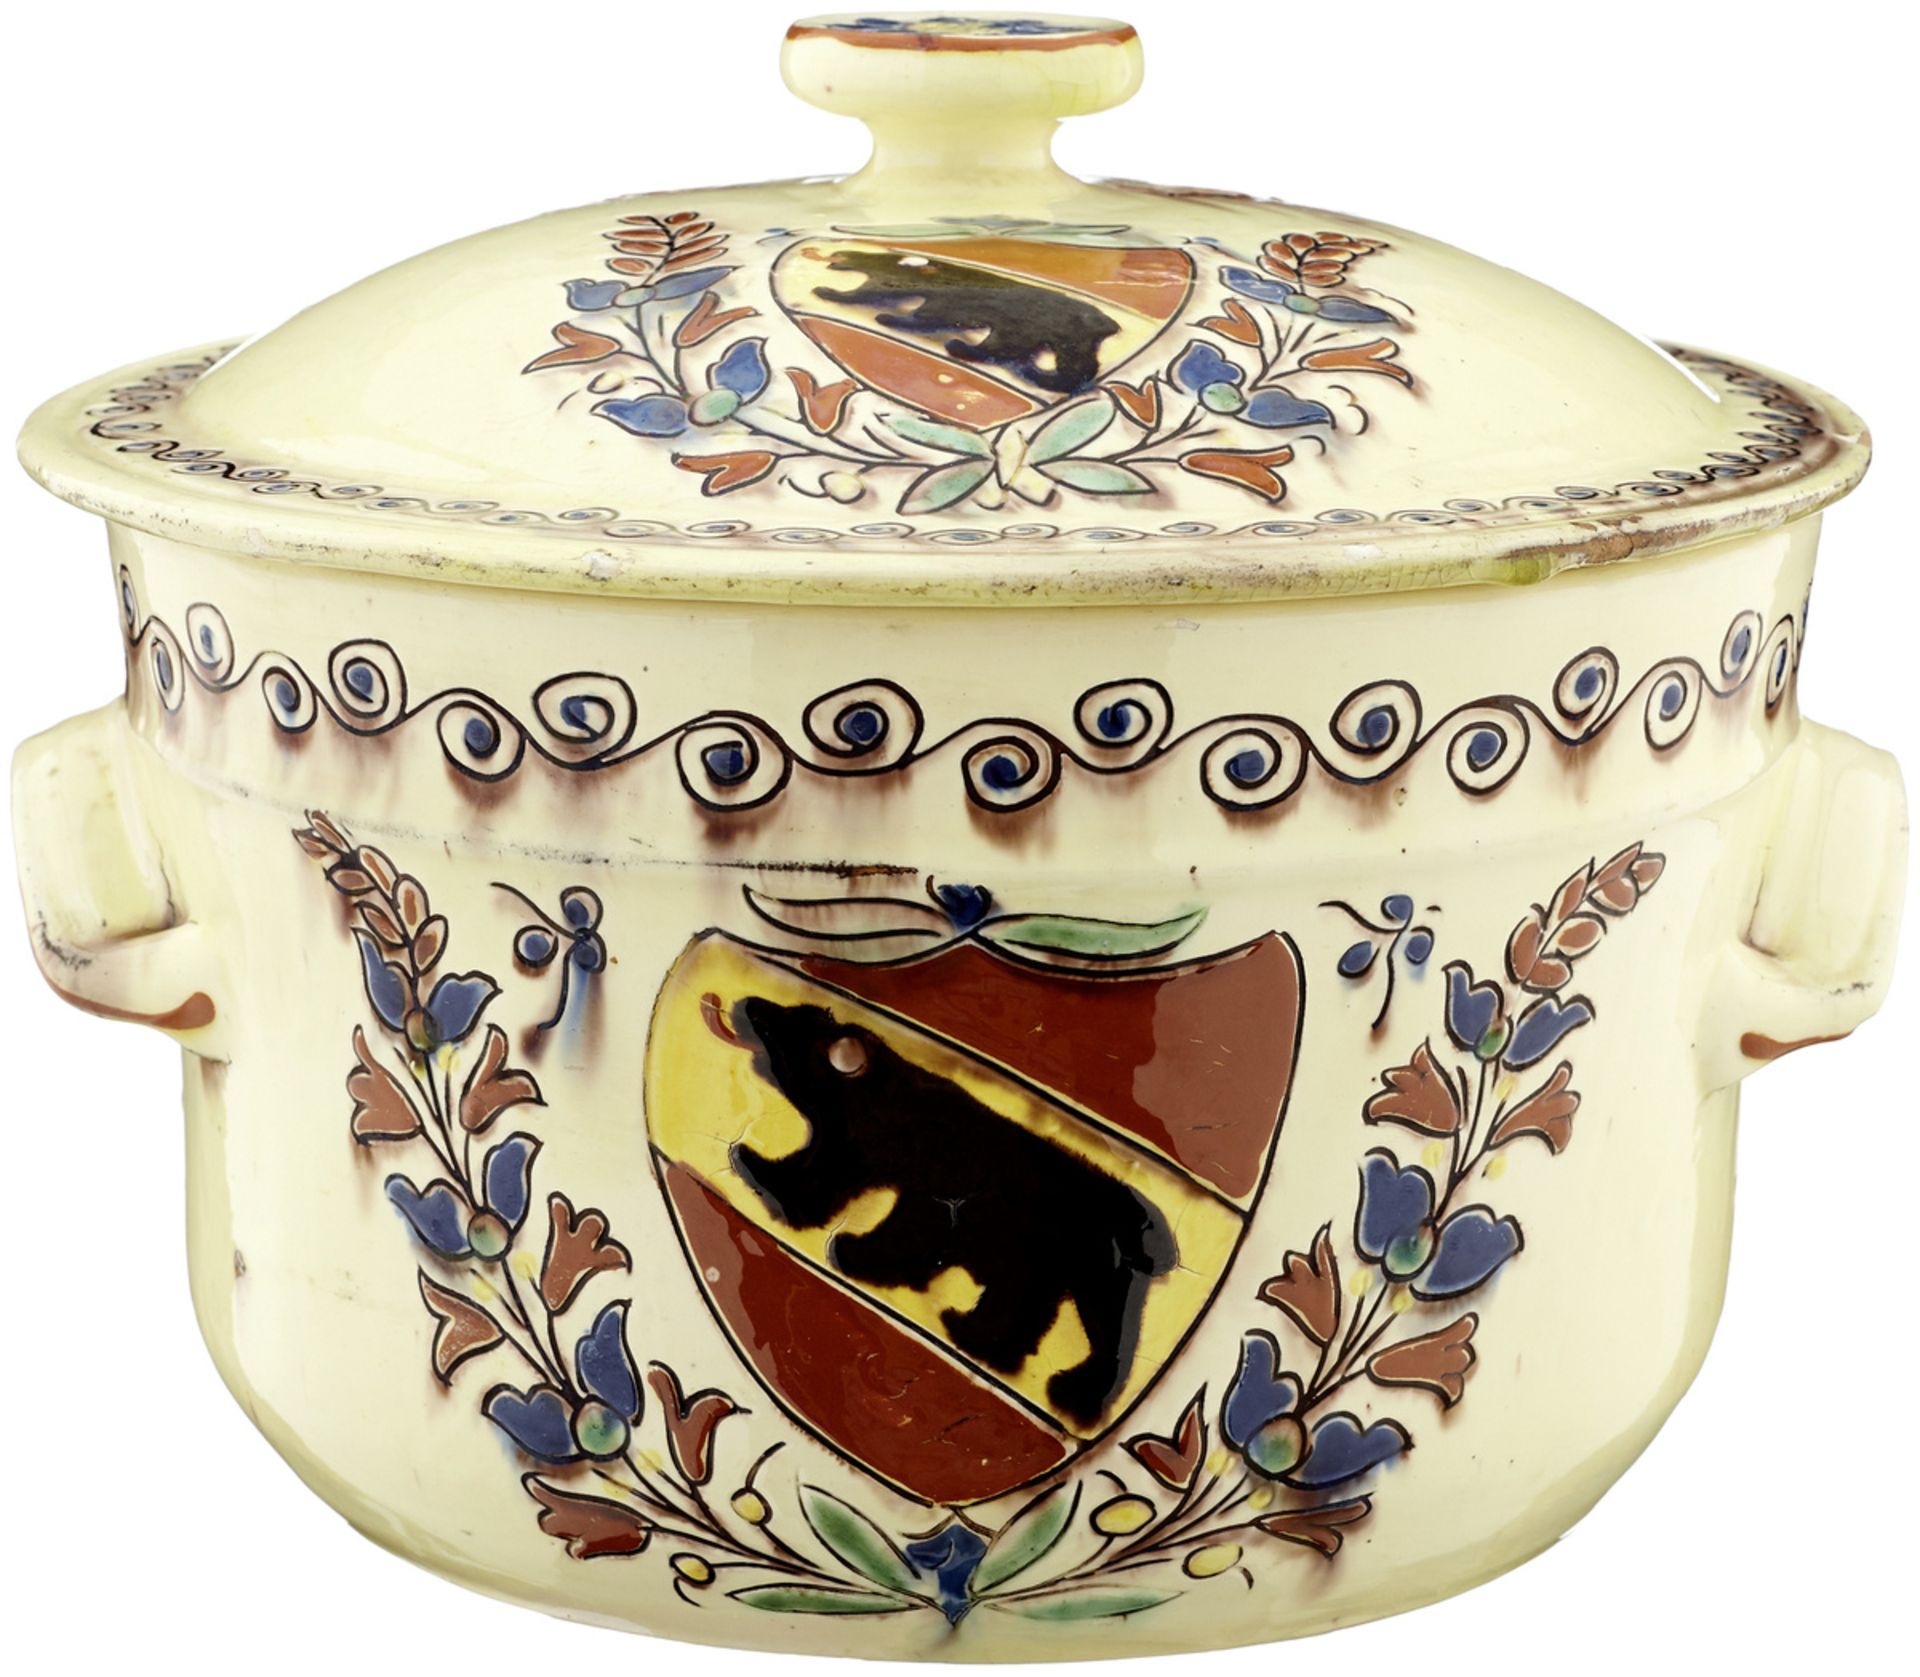 TerrineLangnau, um 1880. Cremefarben glasierte Keramik. Polychrome, stilisierte Blumenmalerei und